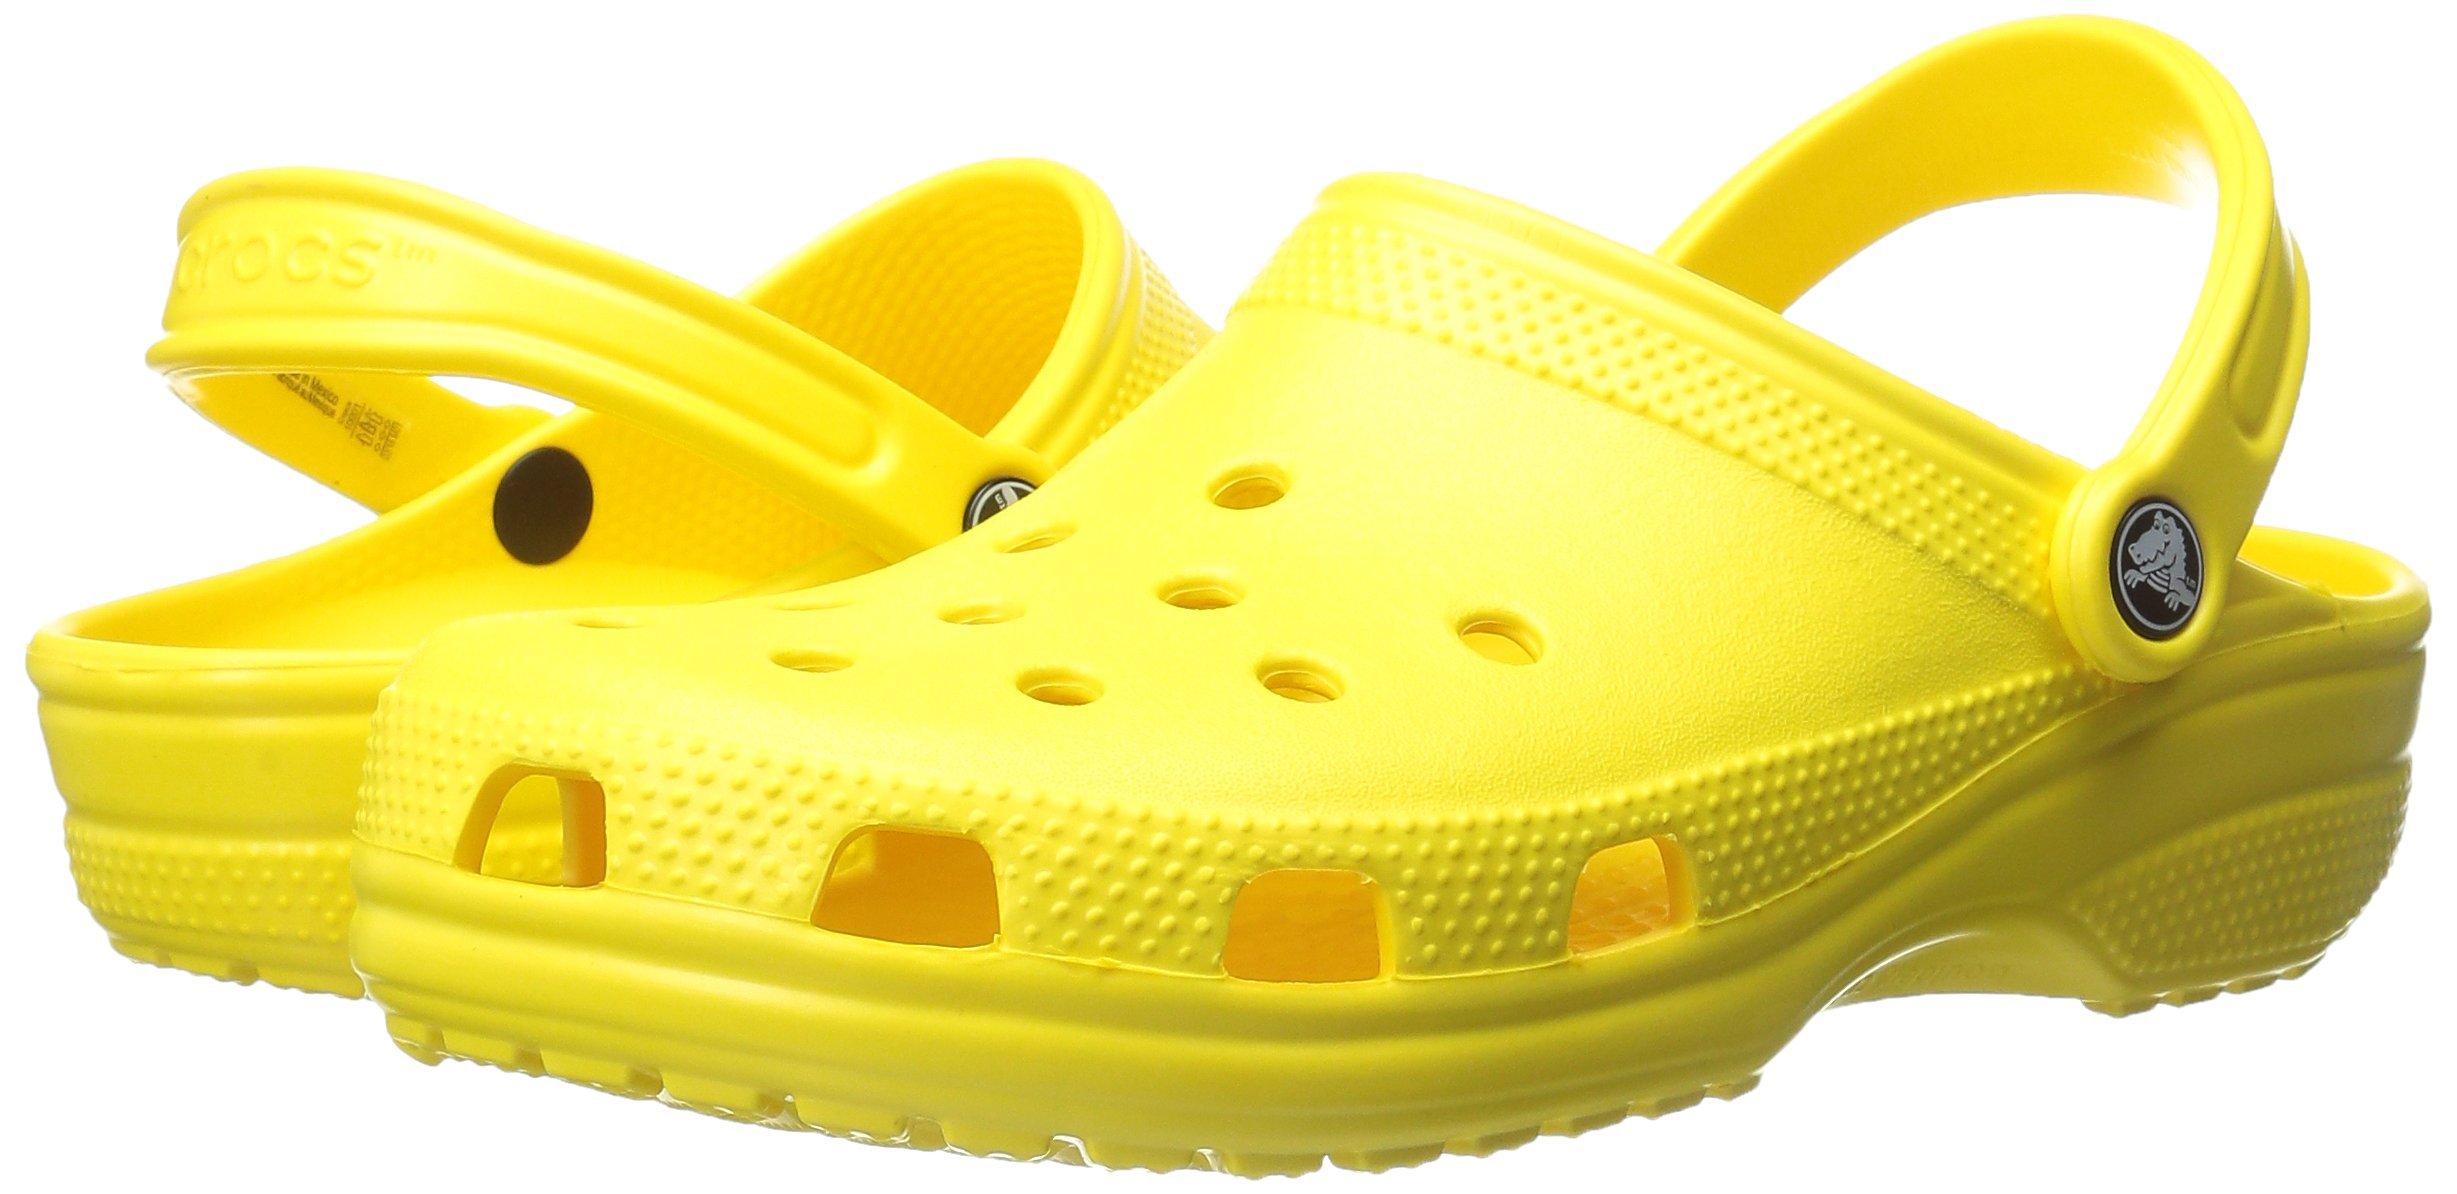 Crocs Unisex-Adult Classic Clogs, Multiple sizes, Different colors $21.21